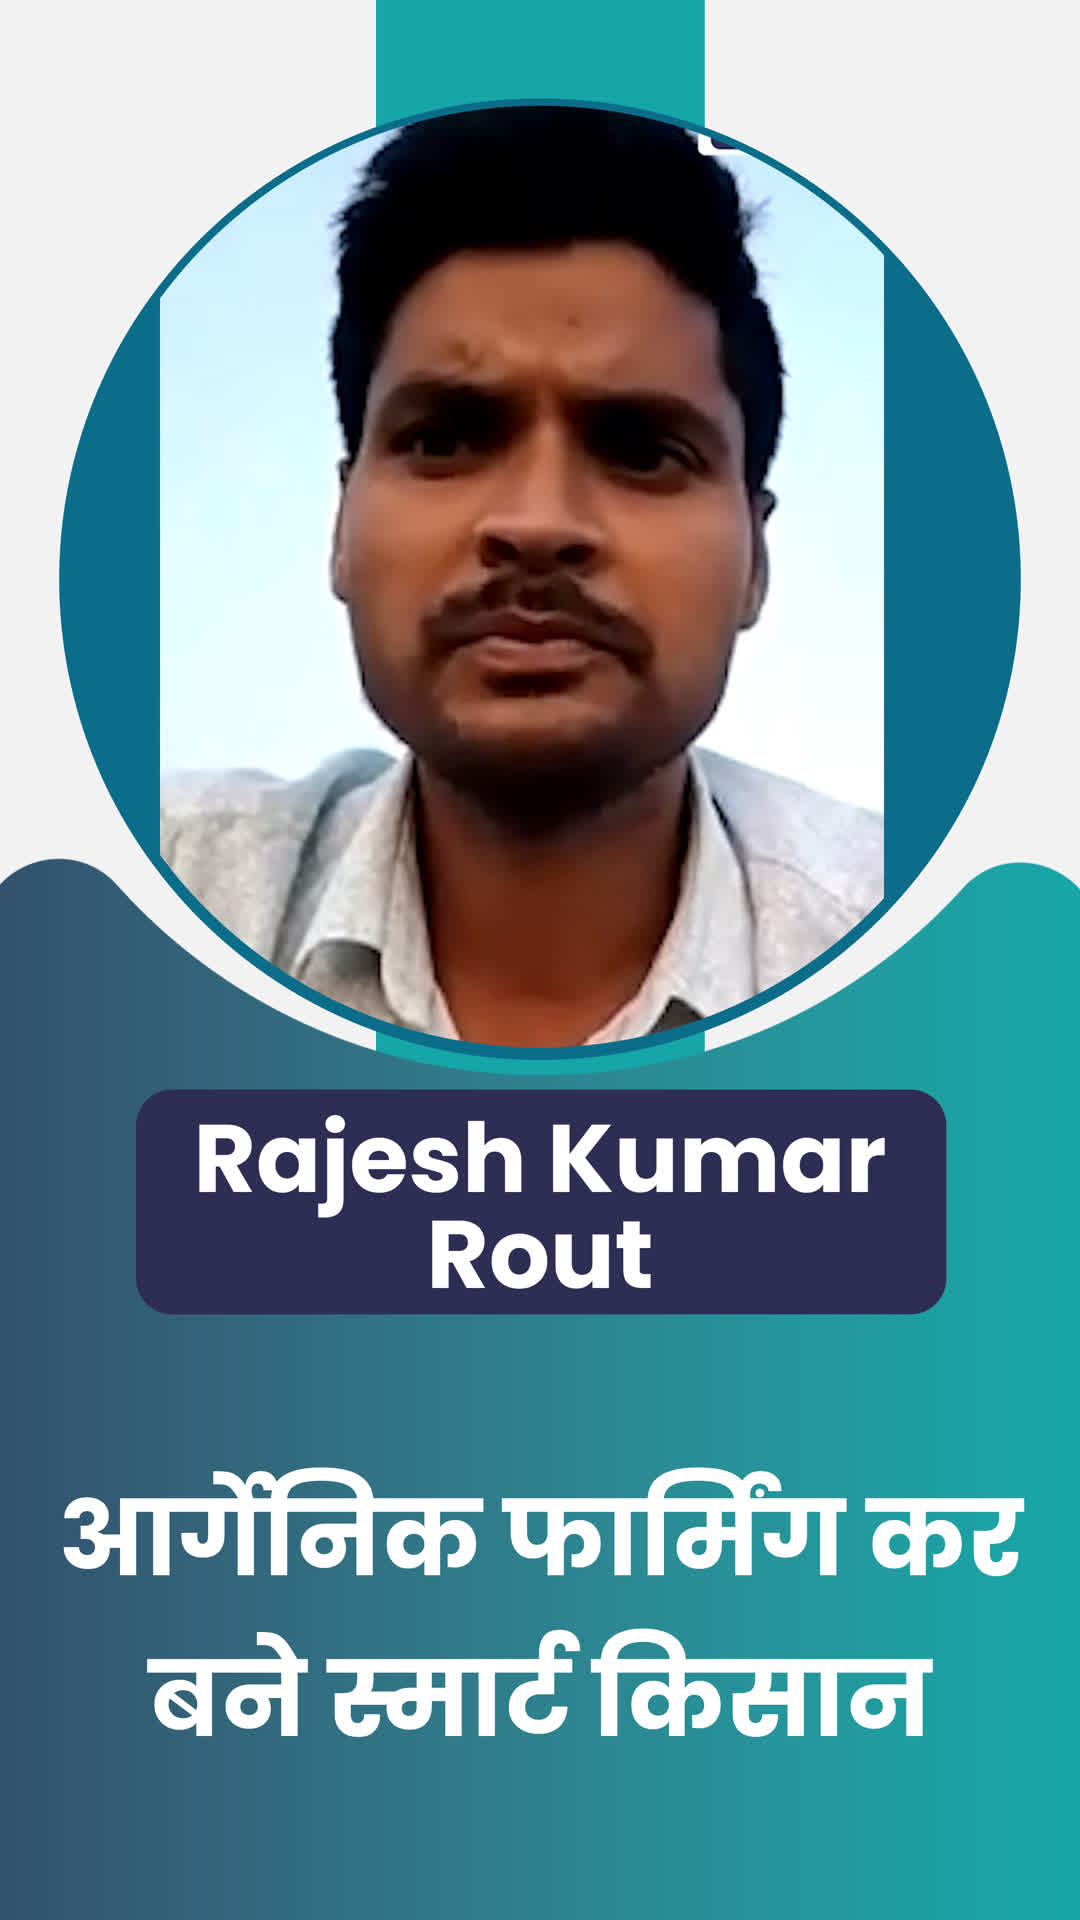 Rajesh Kumar Rout's Honest Review of ffreedom app - Balangir ,Orissa